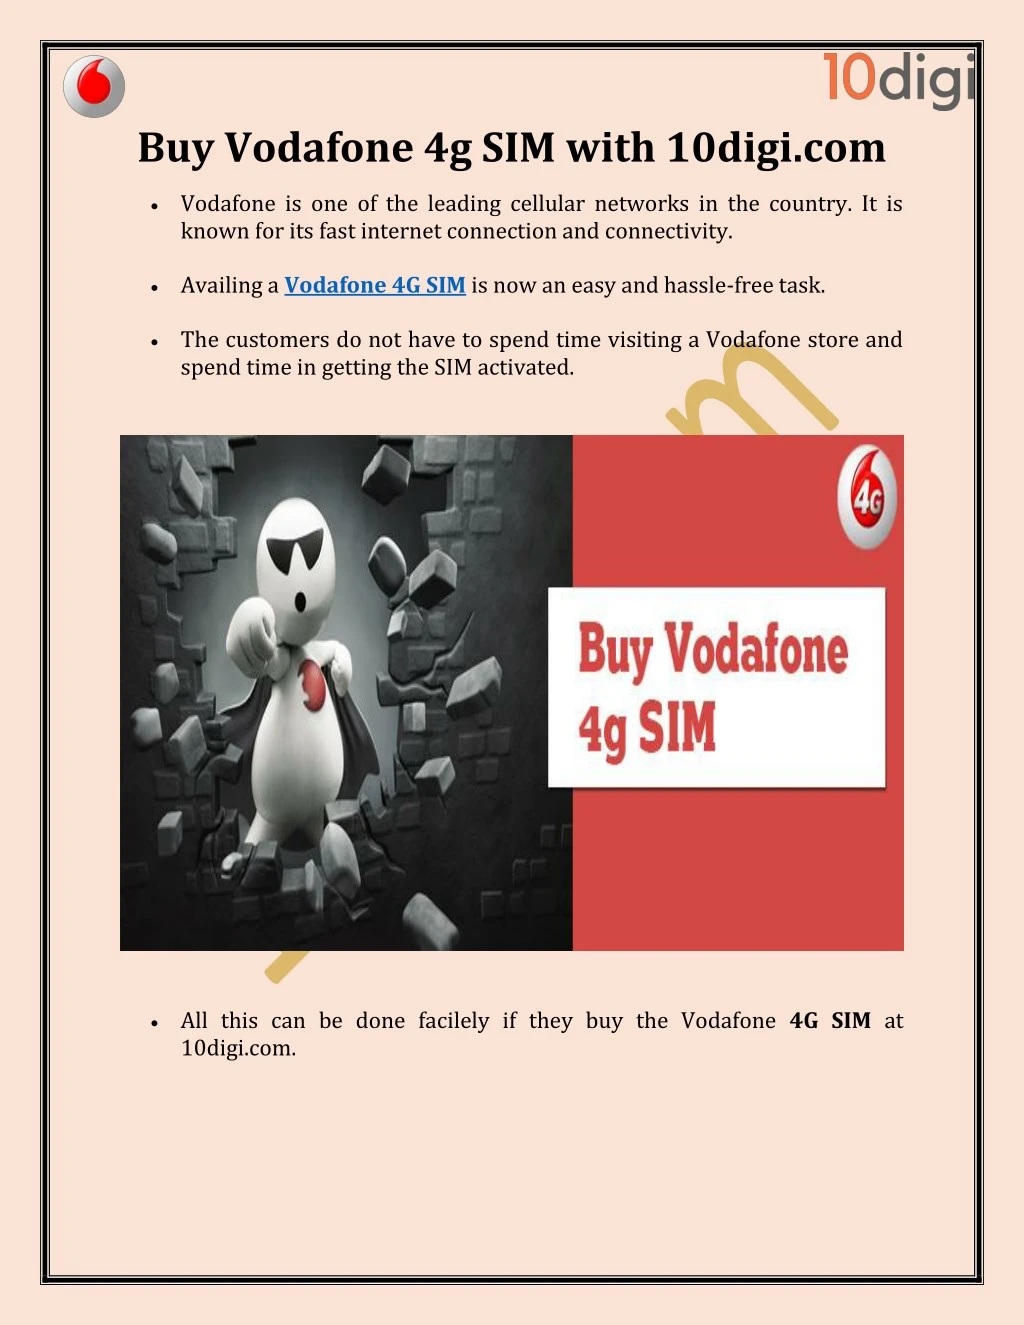 buy vodafone 4g sim with 10digi com